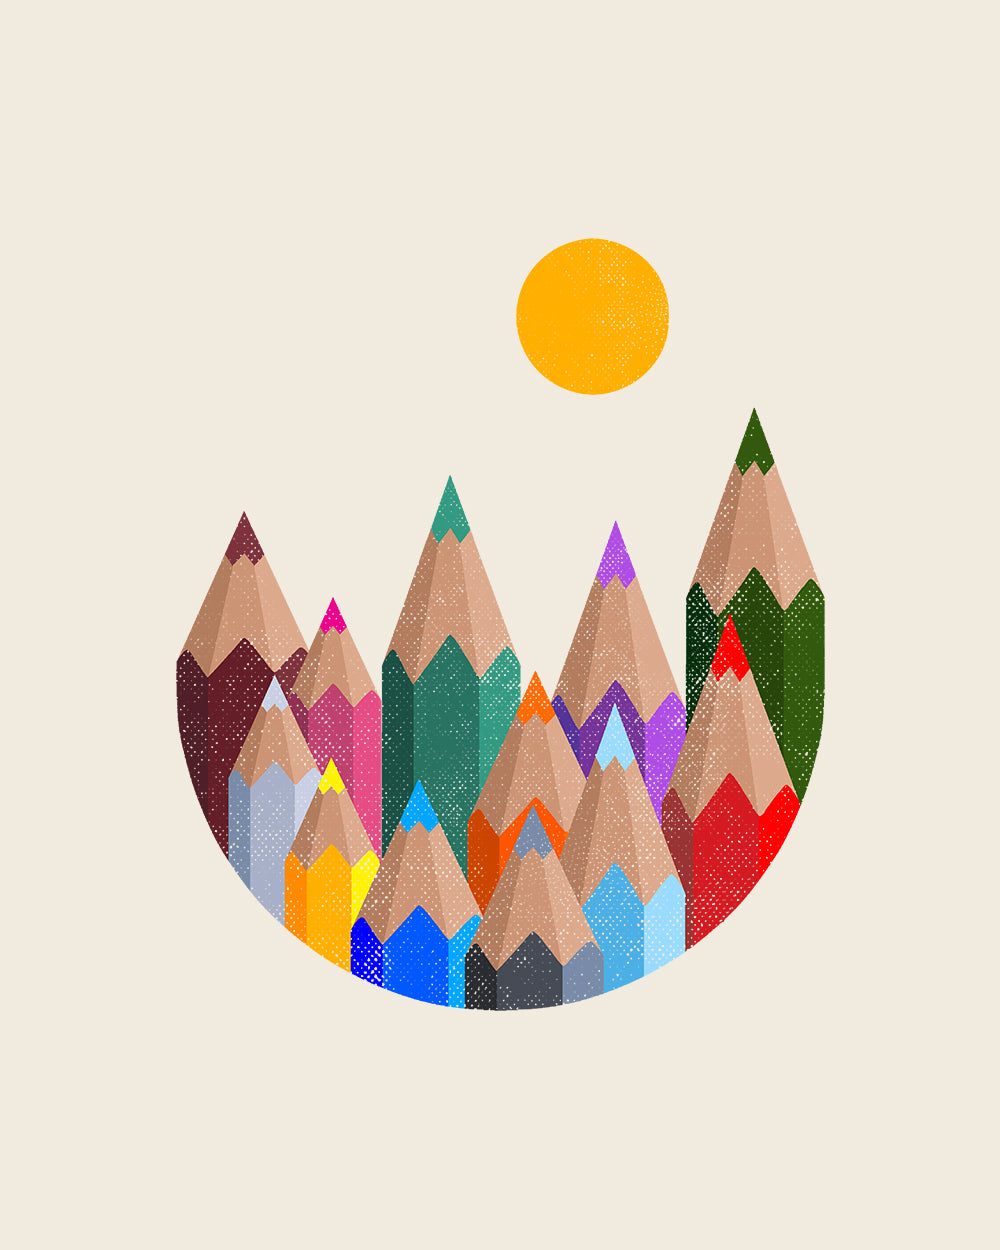 12 Colour Mountains T-Shirt Australia Online #colour_natural